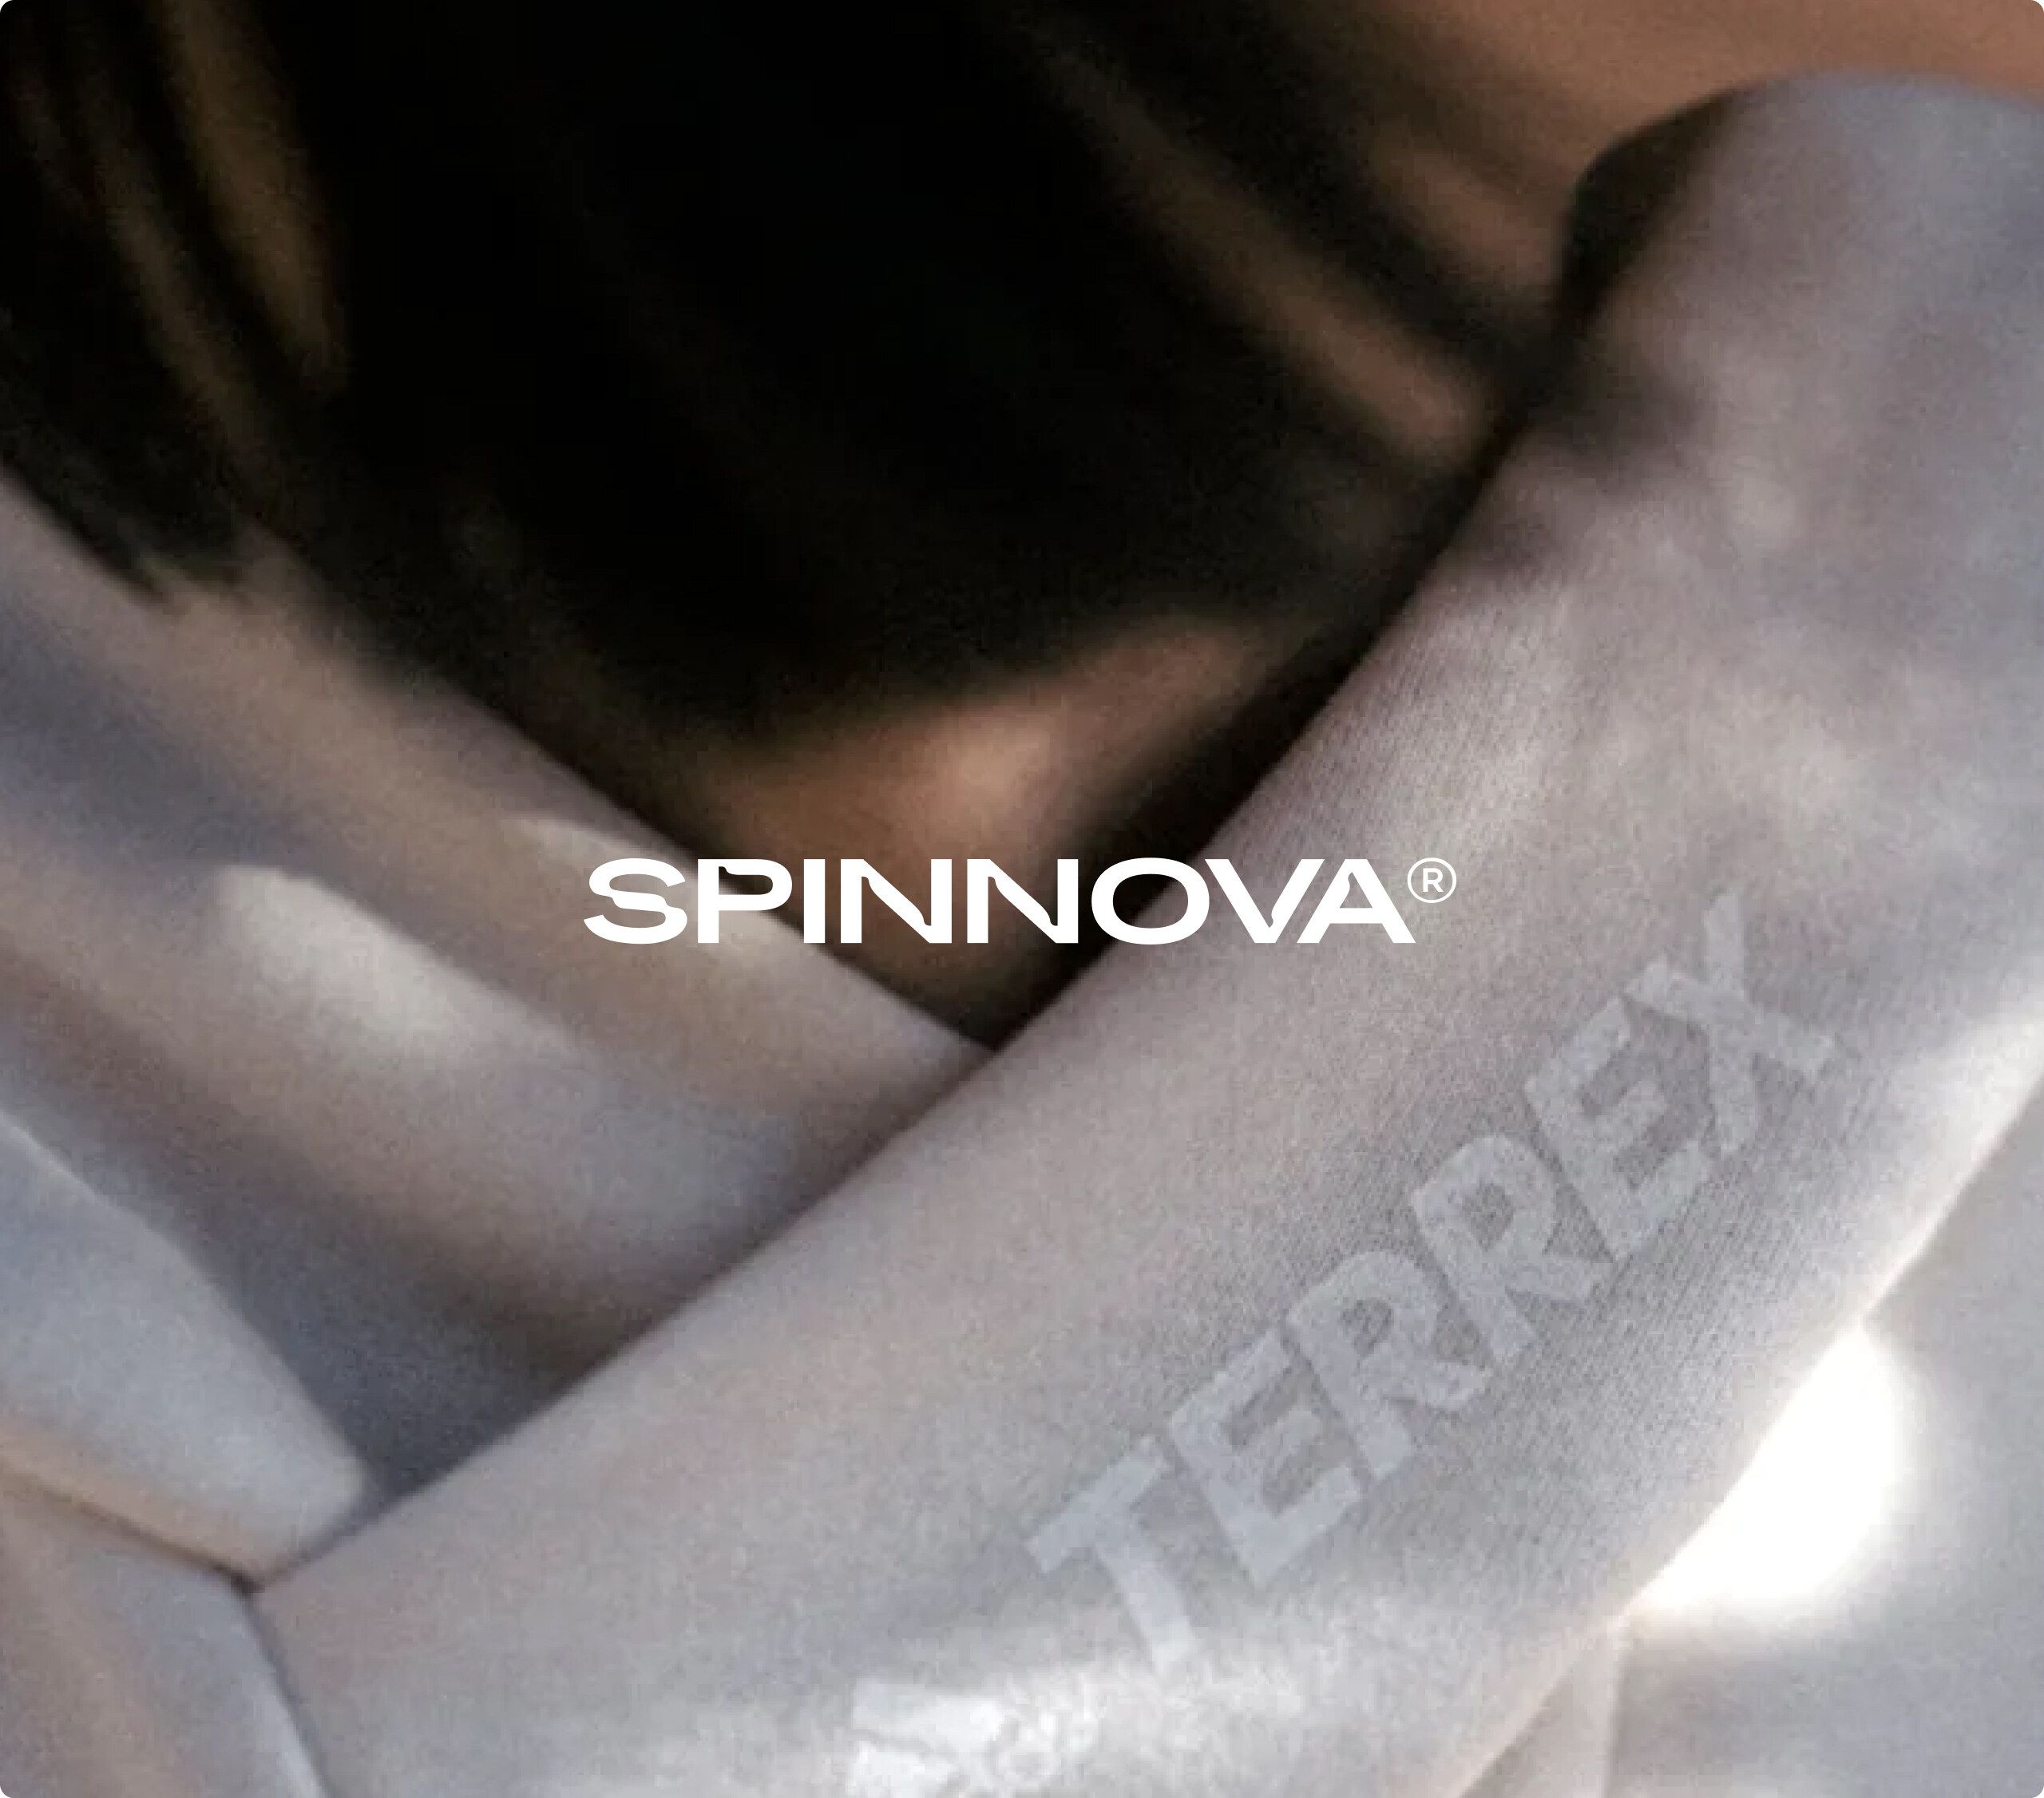 Spinnova brand imagery